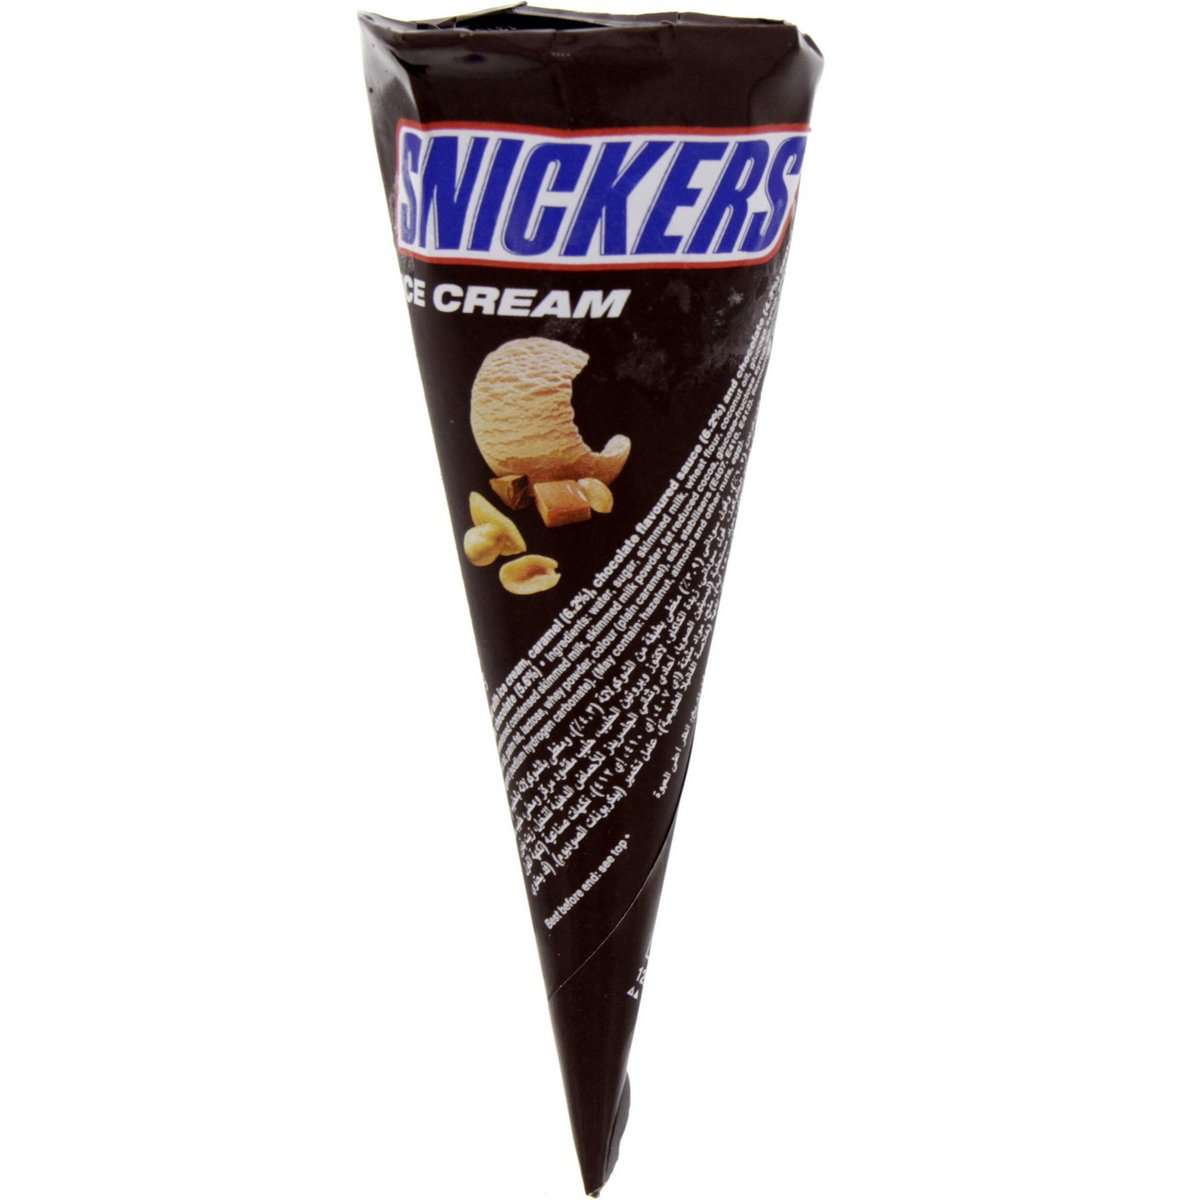 اشتري قم بشراء سنيكرز كون شوكولاتة 1 قطعة Online at Best Price من الموقع - من لولو هايبر ماركت Ice Cream Impulse في السعودية